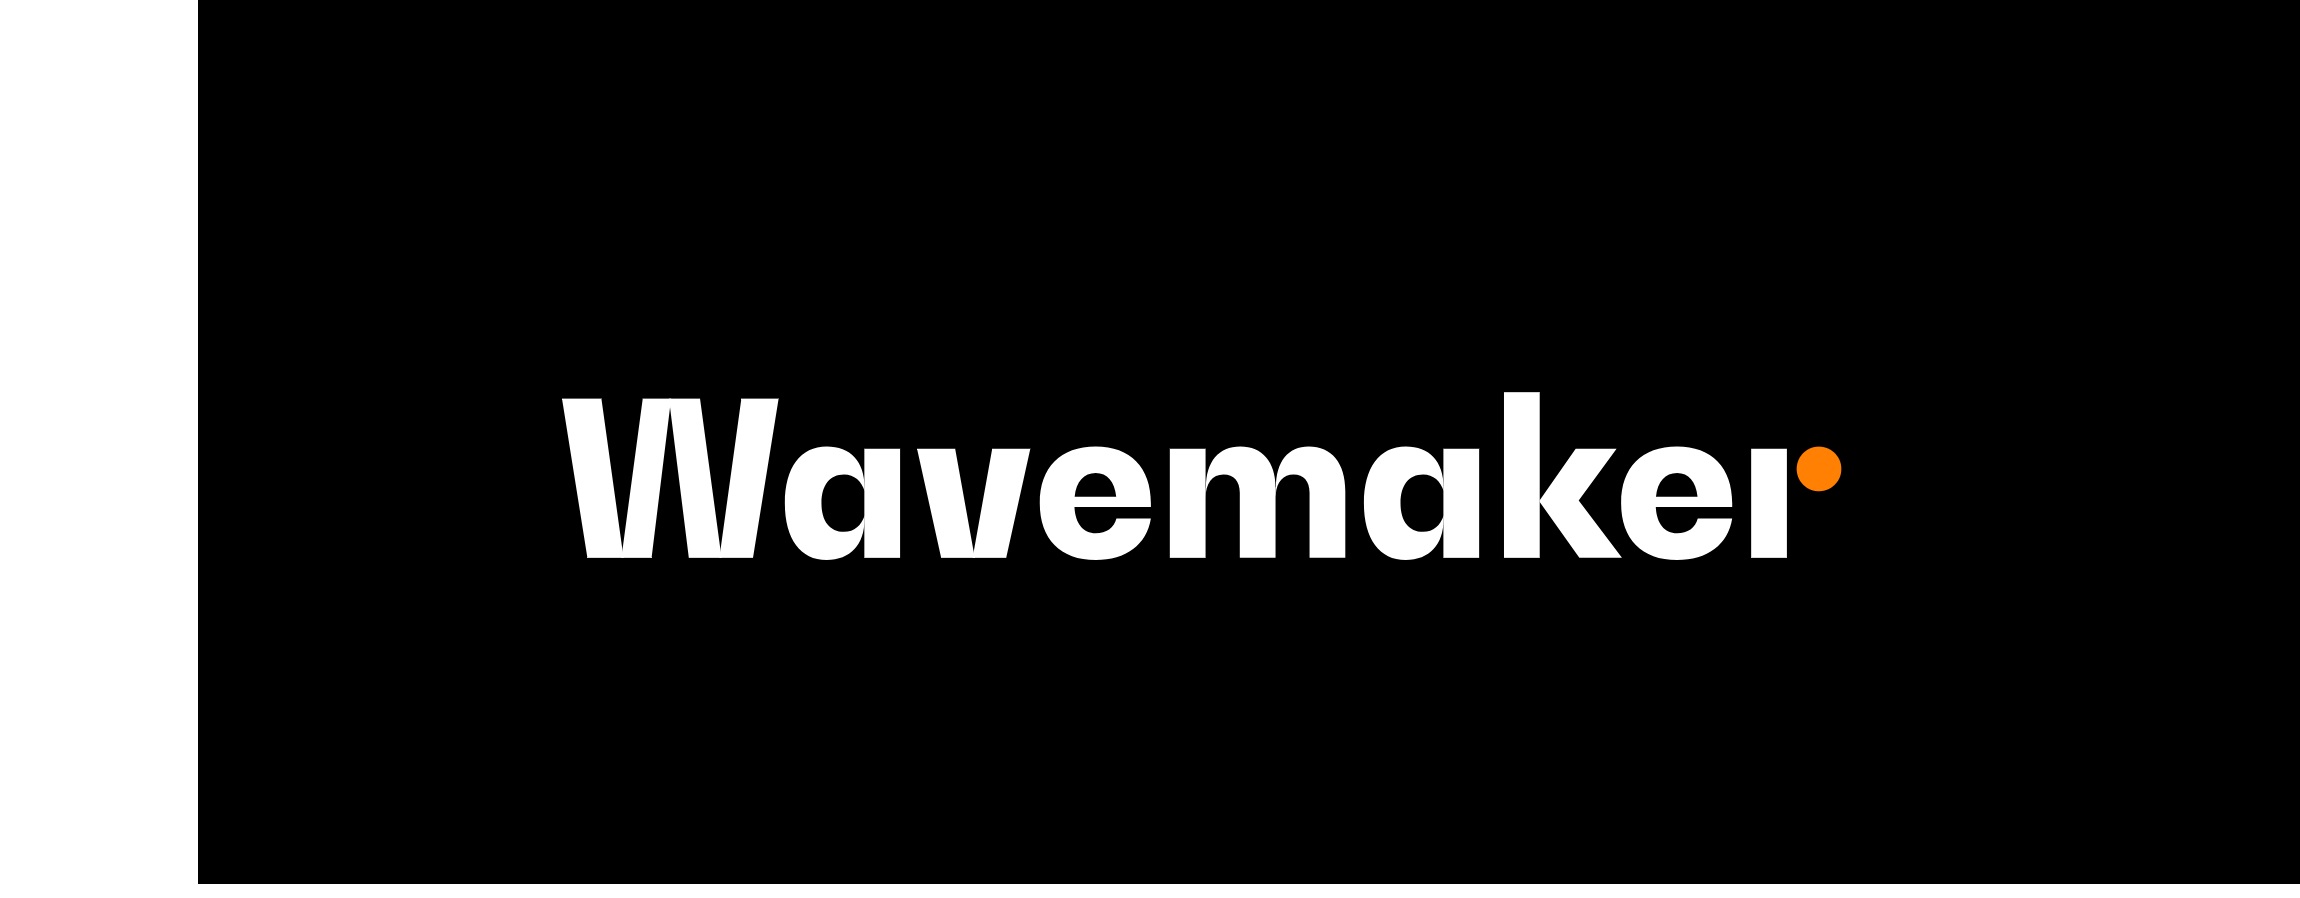 wavemaker,programapublicidad